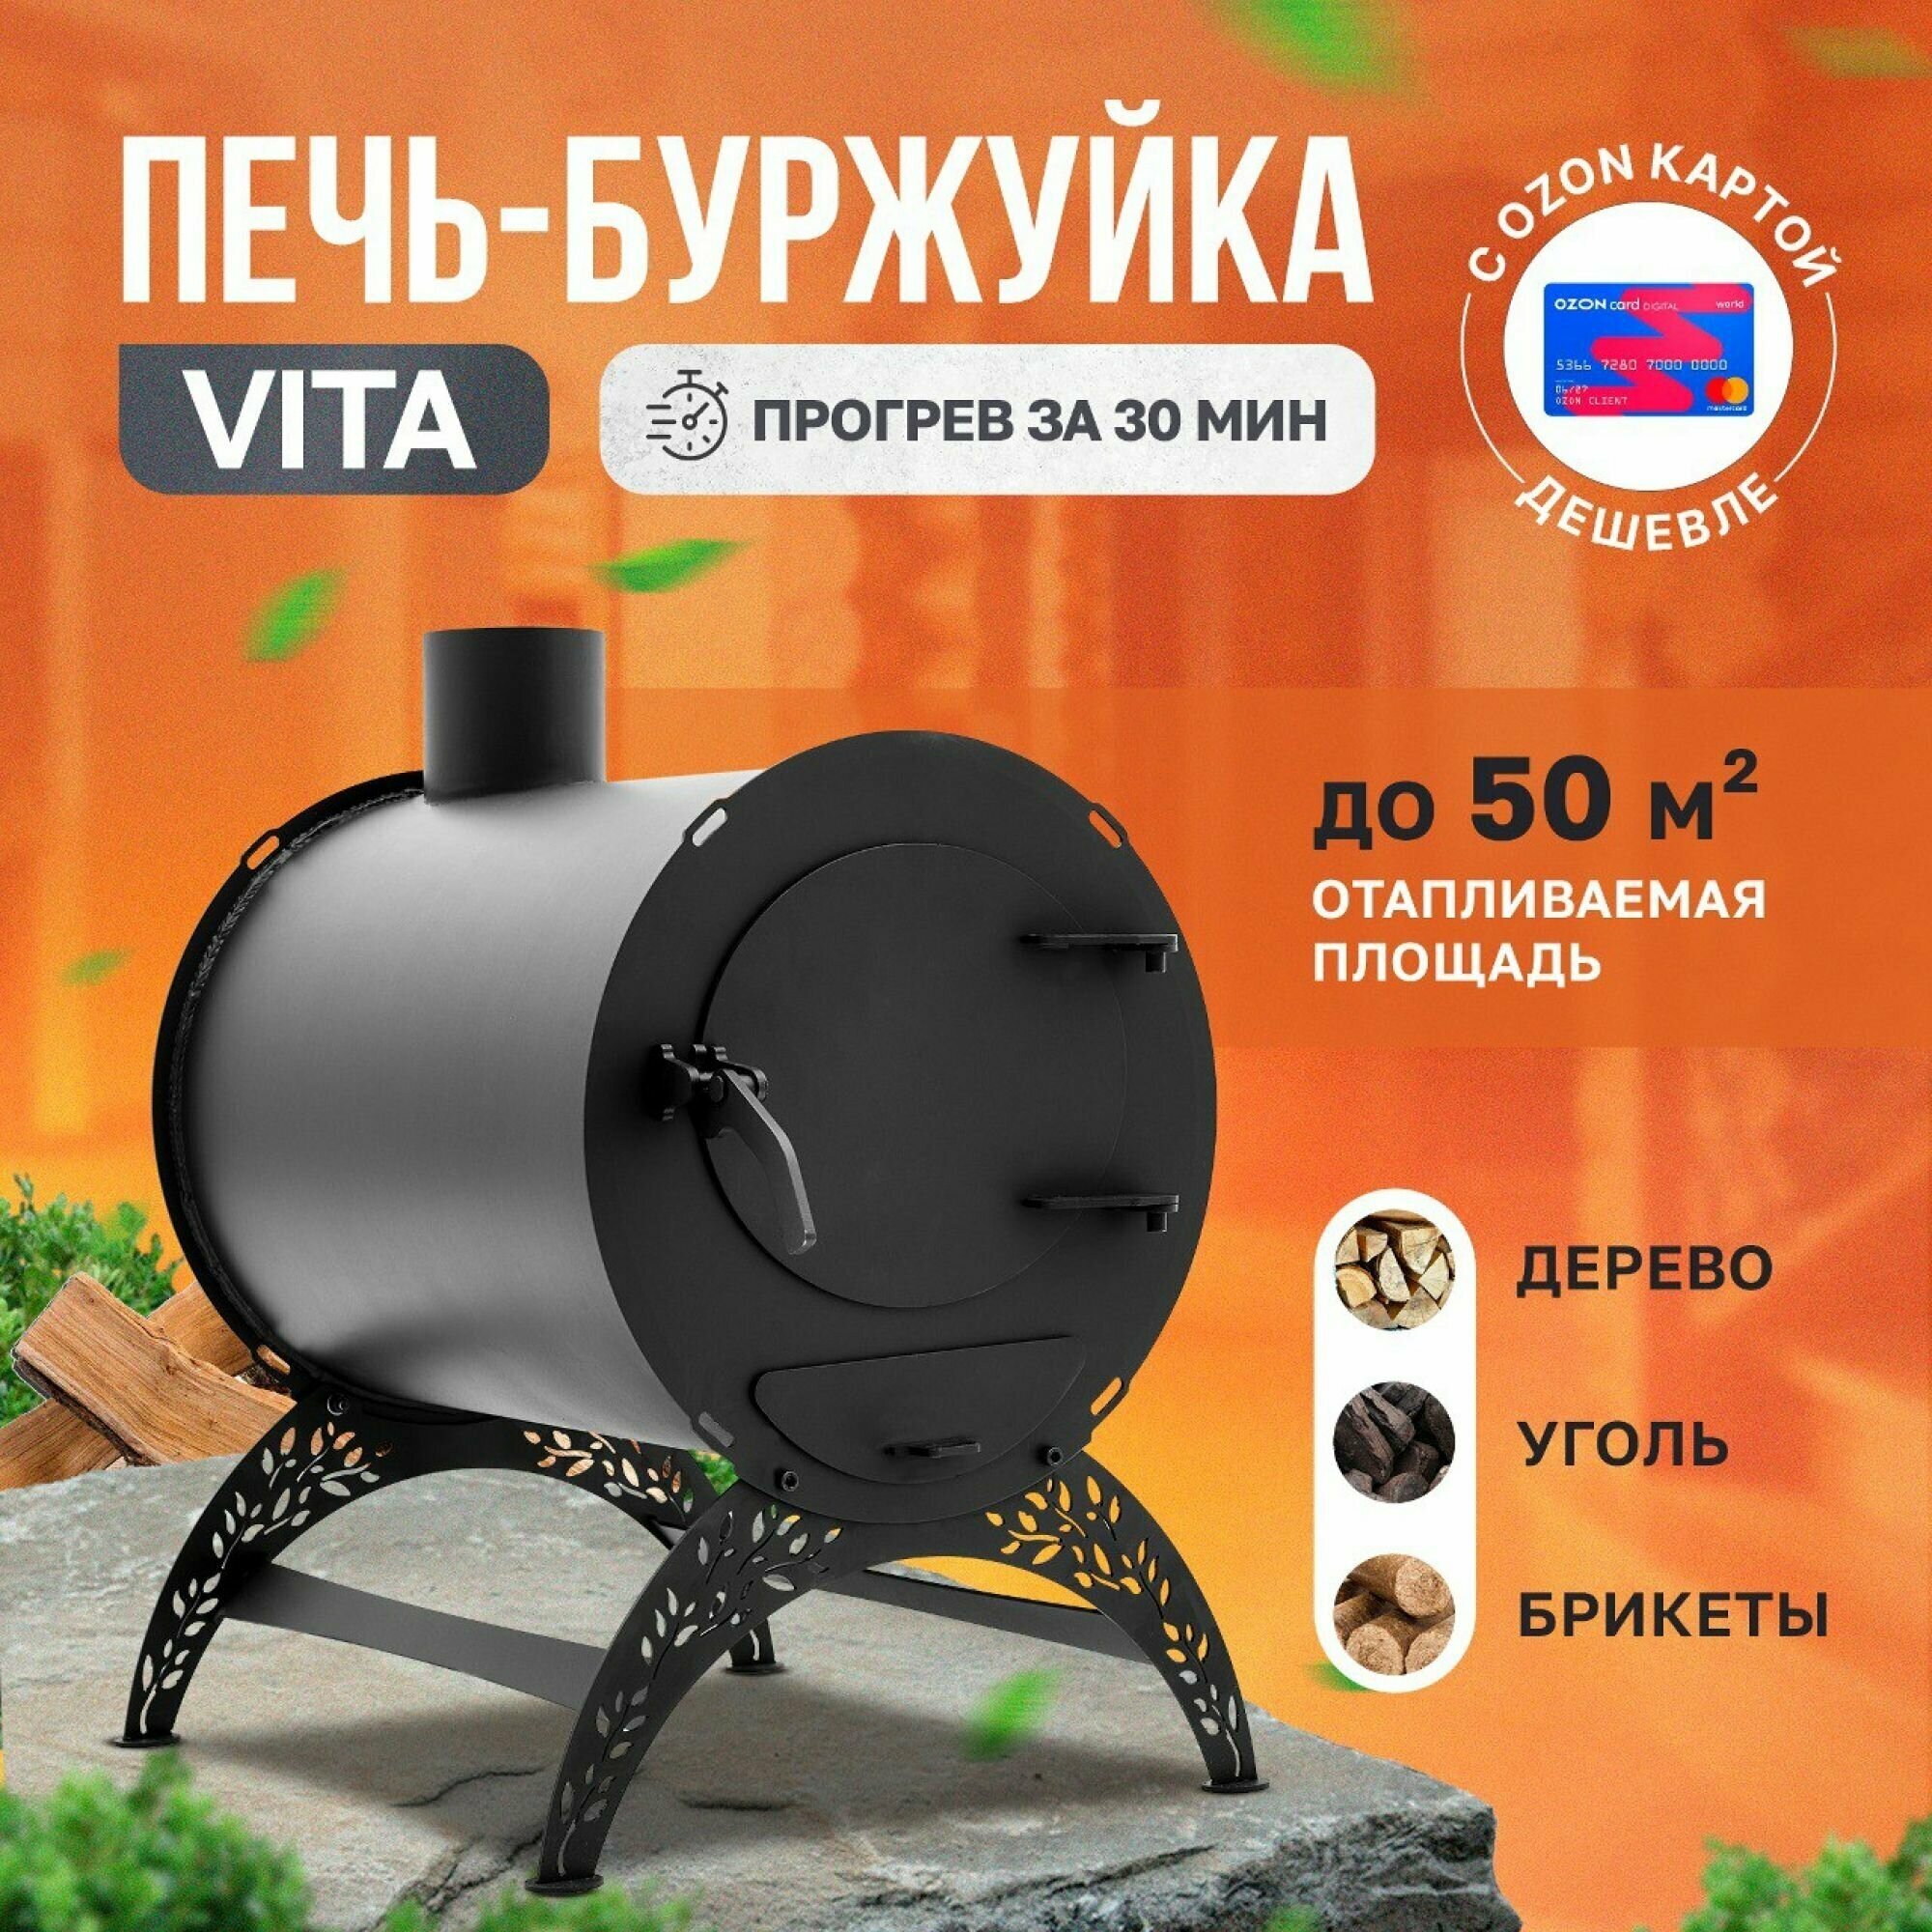 Отопительная печь-буржуйка VITA мини круглая 50 м3 / дровяная печь для дома / дачи/ гаража / палаток